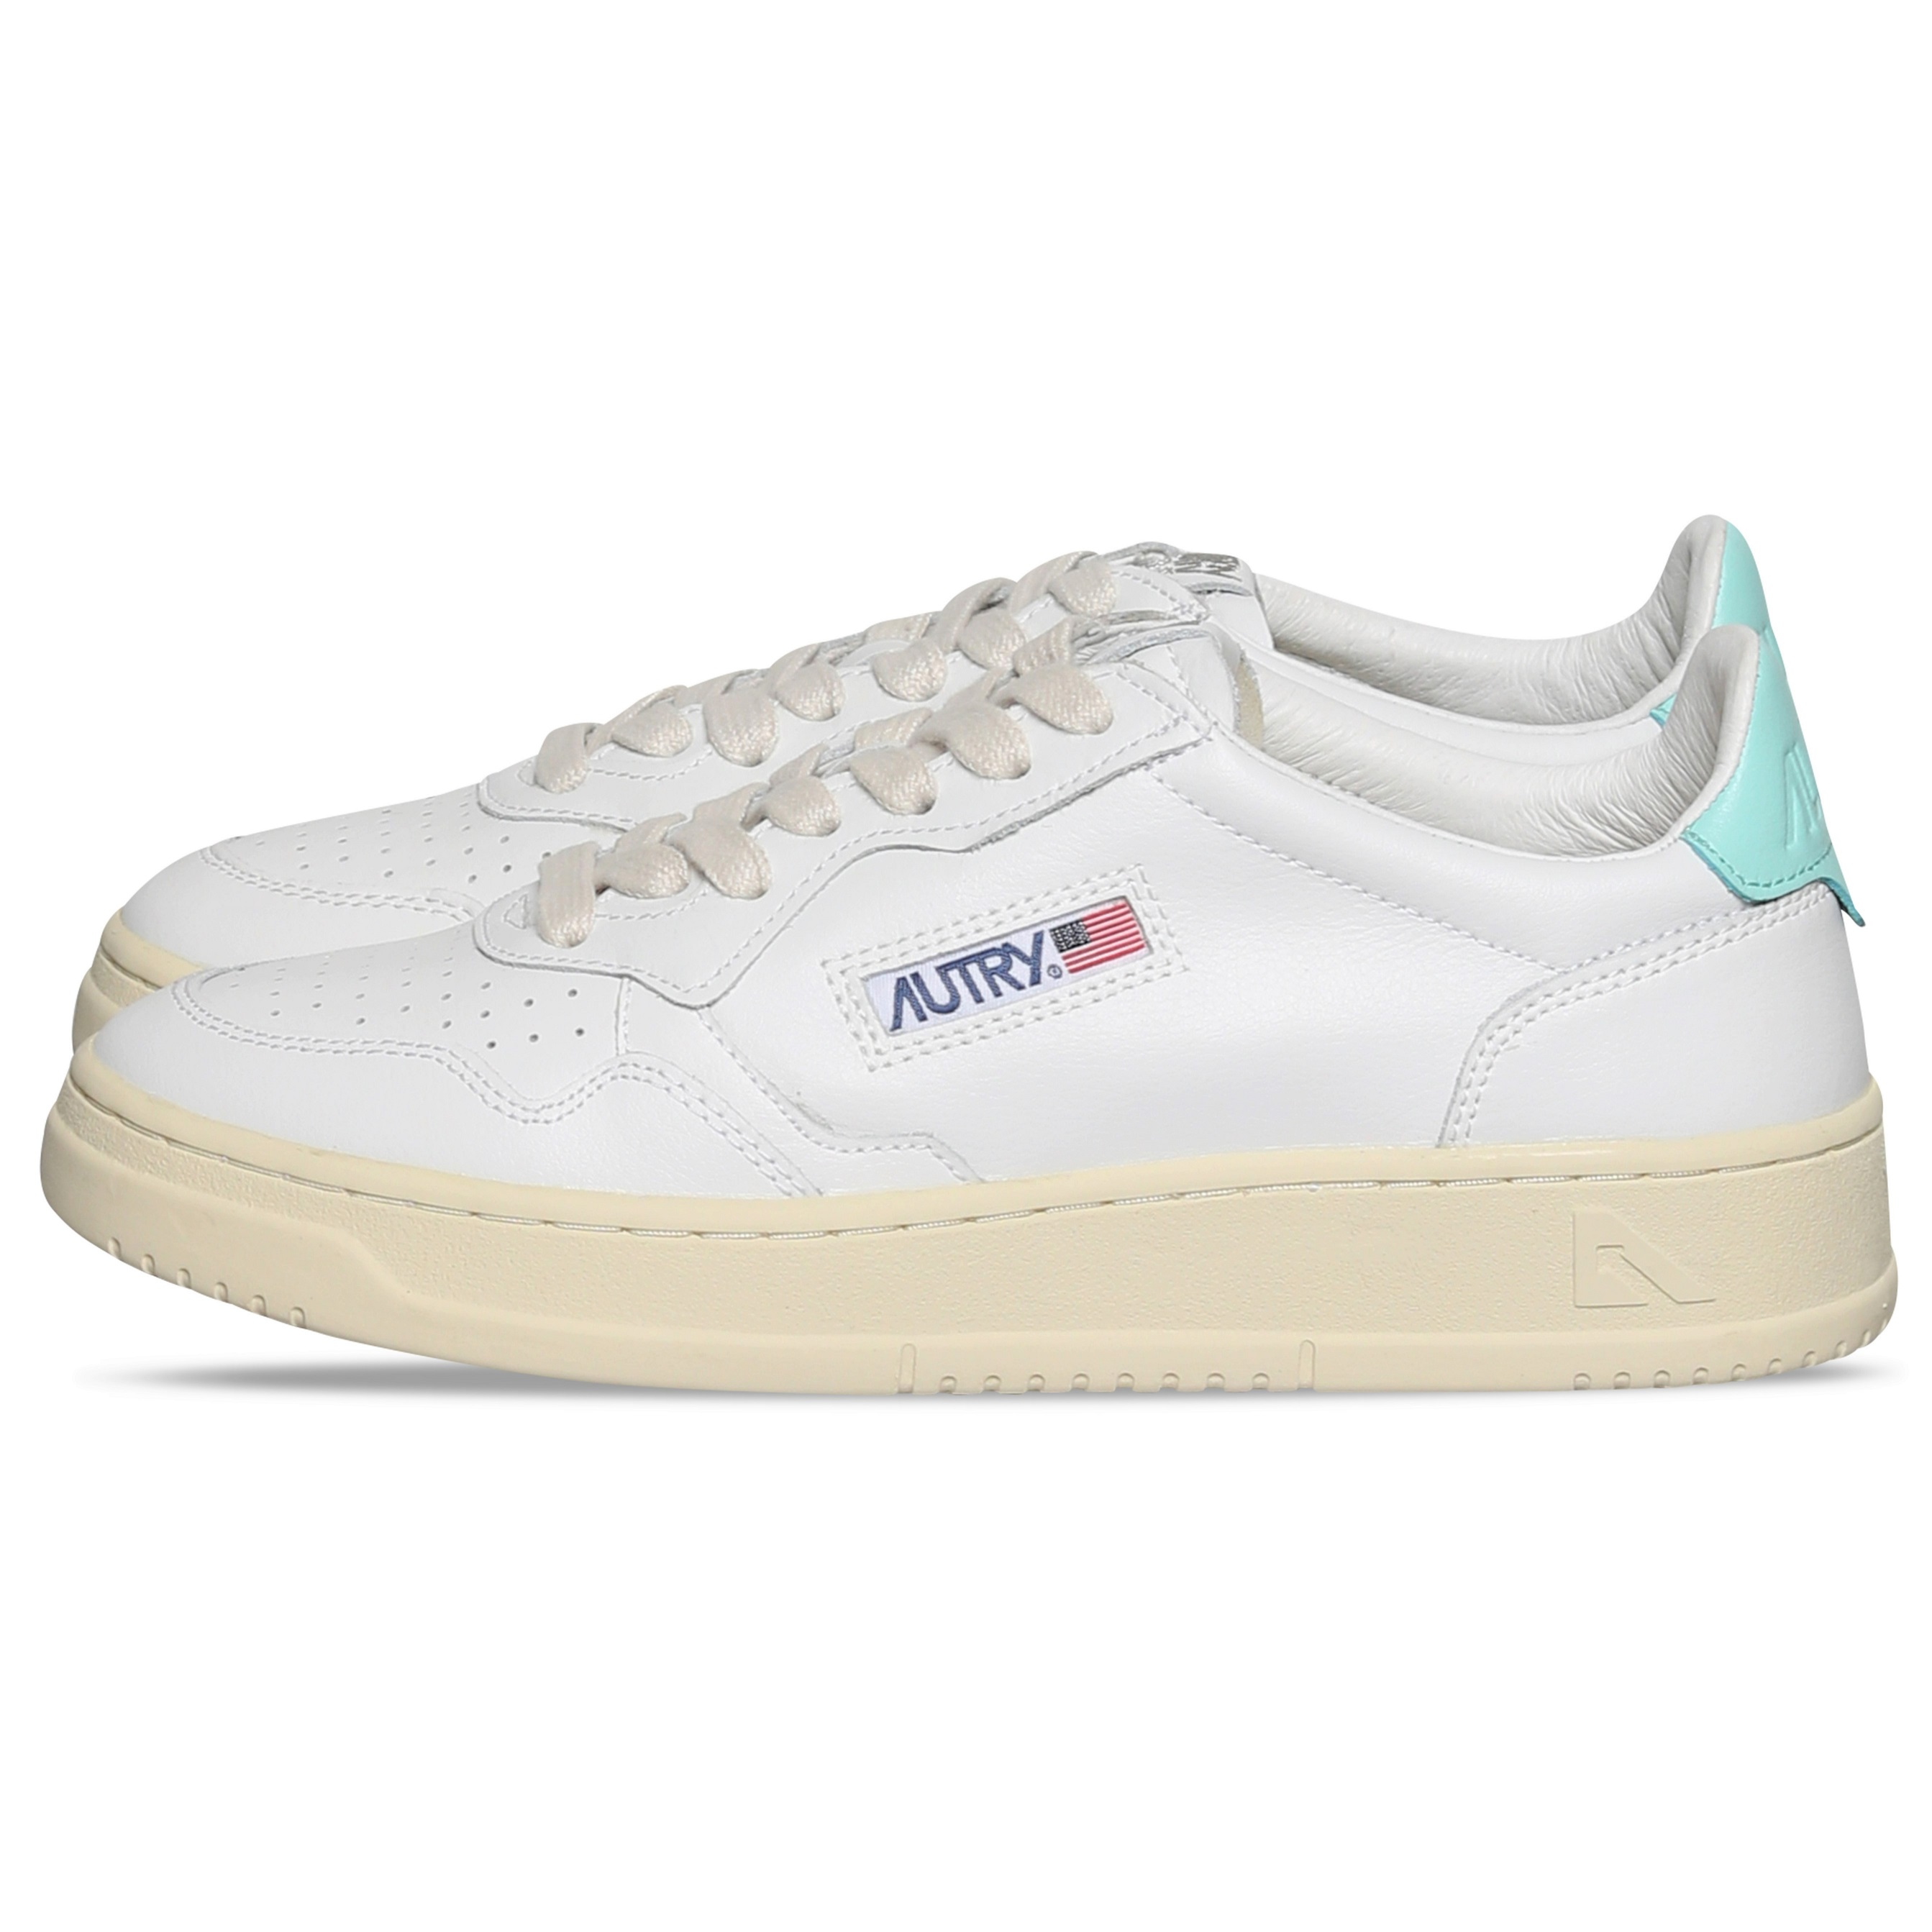 Autry Action Shoes Low Sneaker White/Turqoiuse